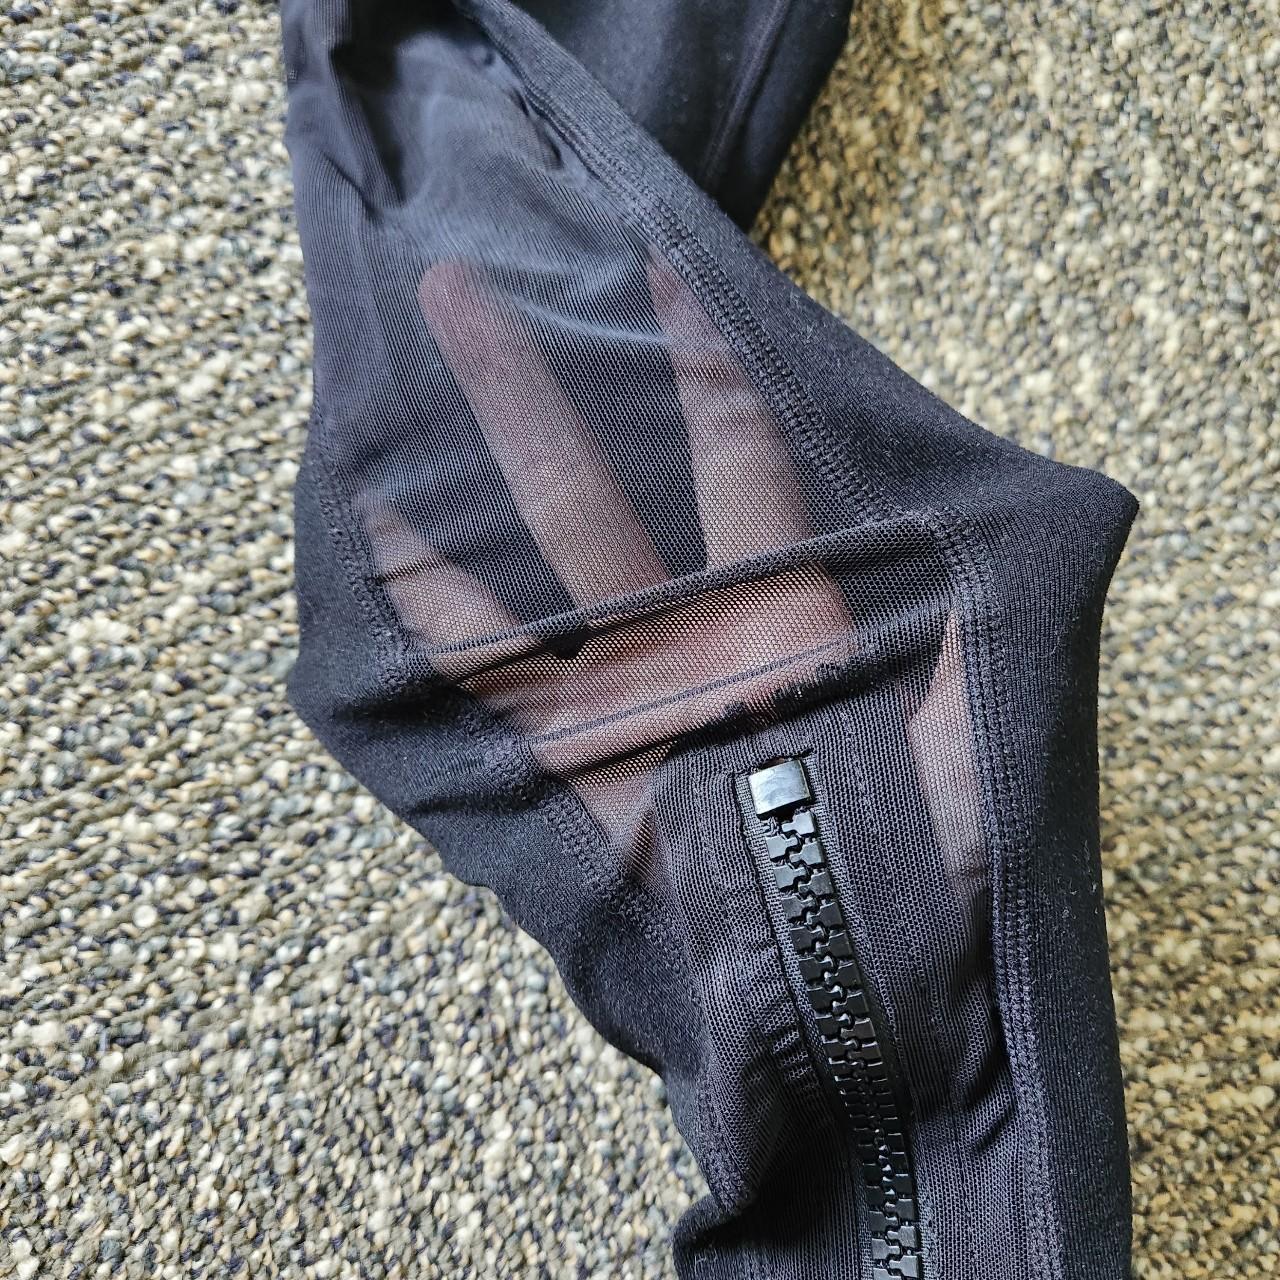 Popflex black leggings, developed by Cassey Ho - Depop